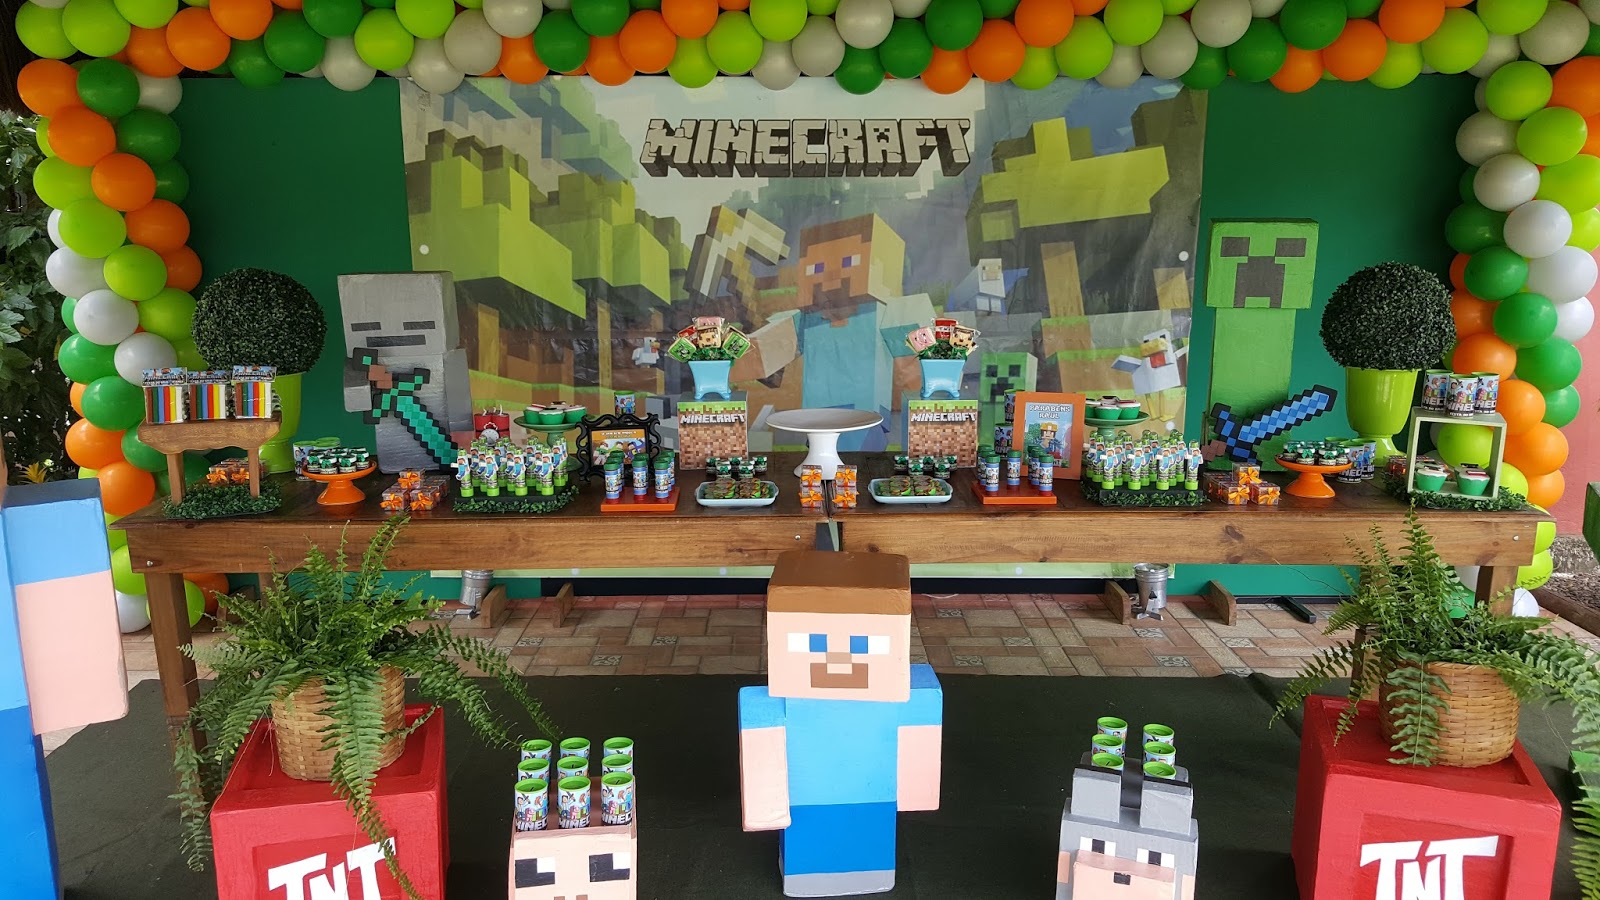 Lembrancinhas e Festas: Festa infantil tema Minecraft